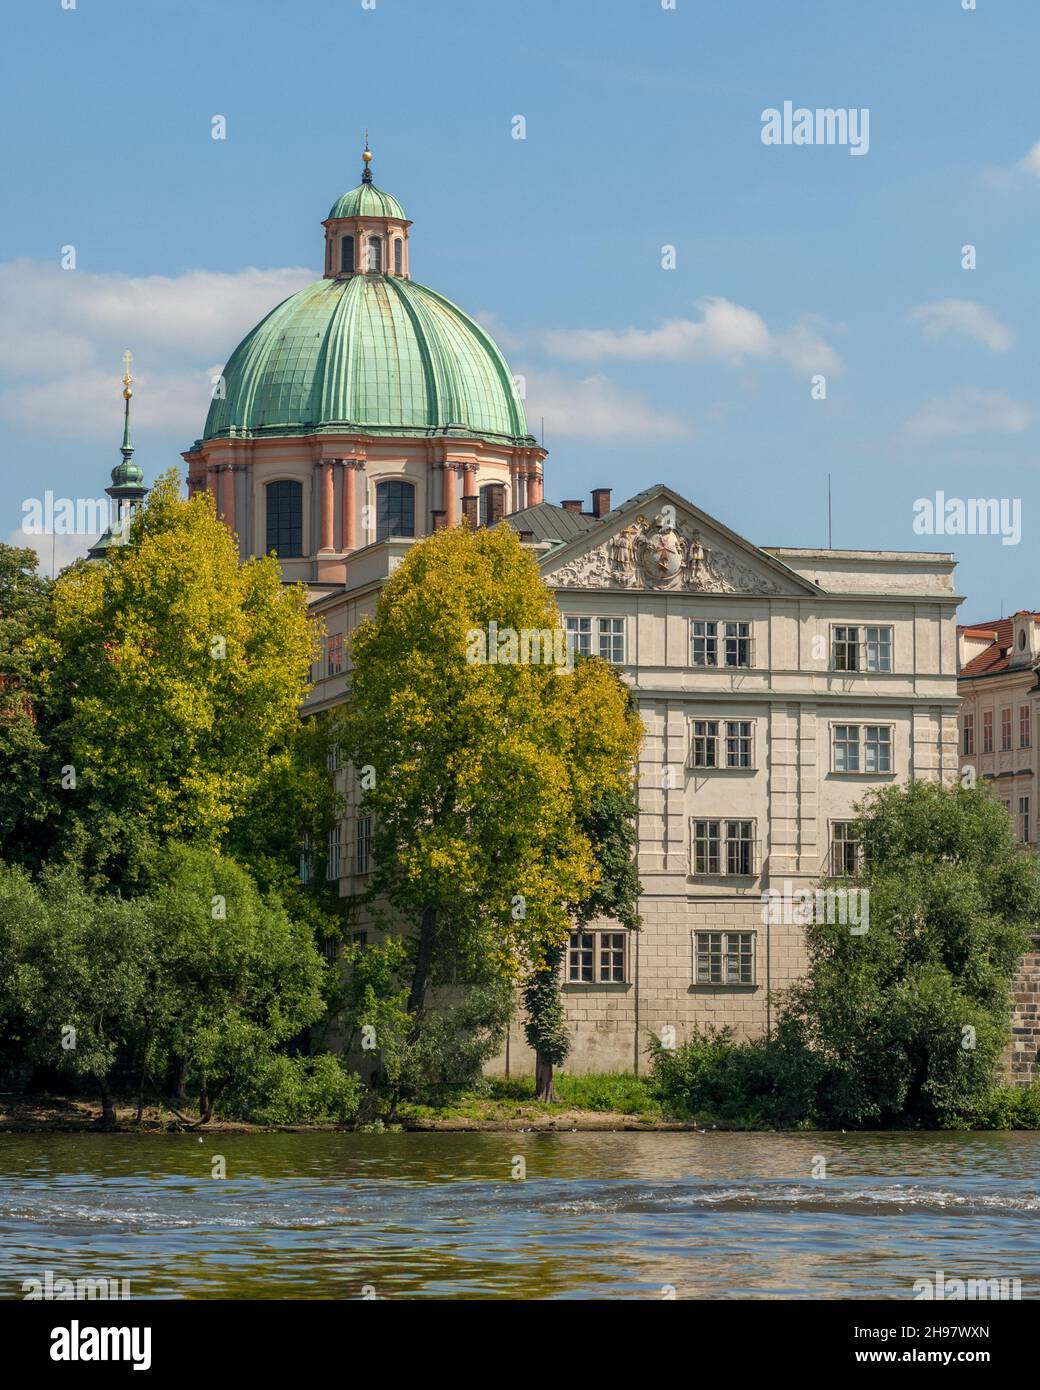 La cúpula verde de 40 metros de altura y la cúpula de la iglesia neoclásica de San Francisco de Asís de Jean-Baptiste Marthe tienen vistas al río Moldava de Praga. Foto de stock